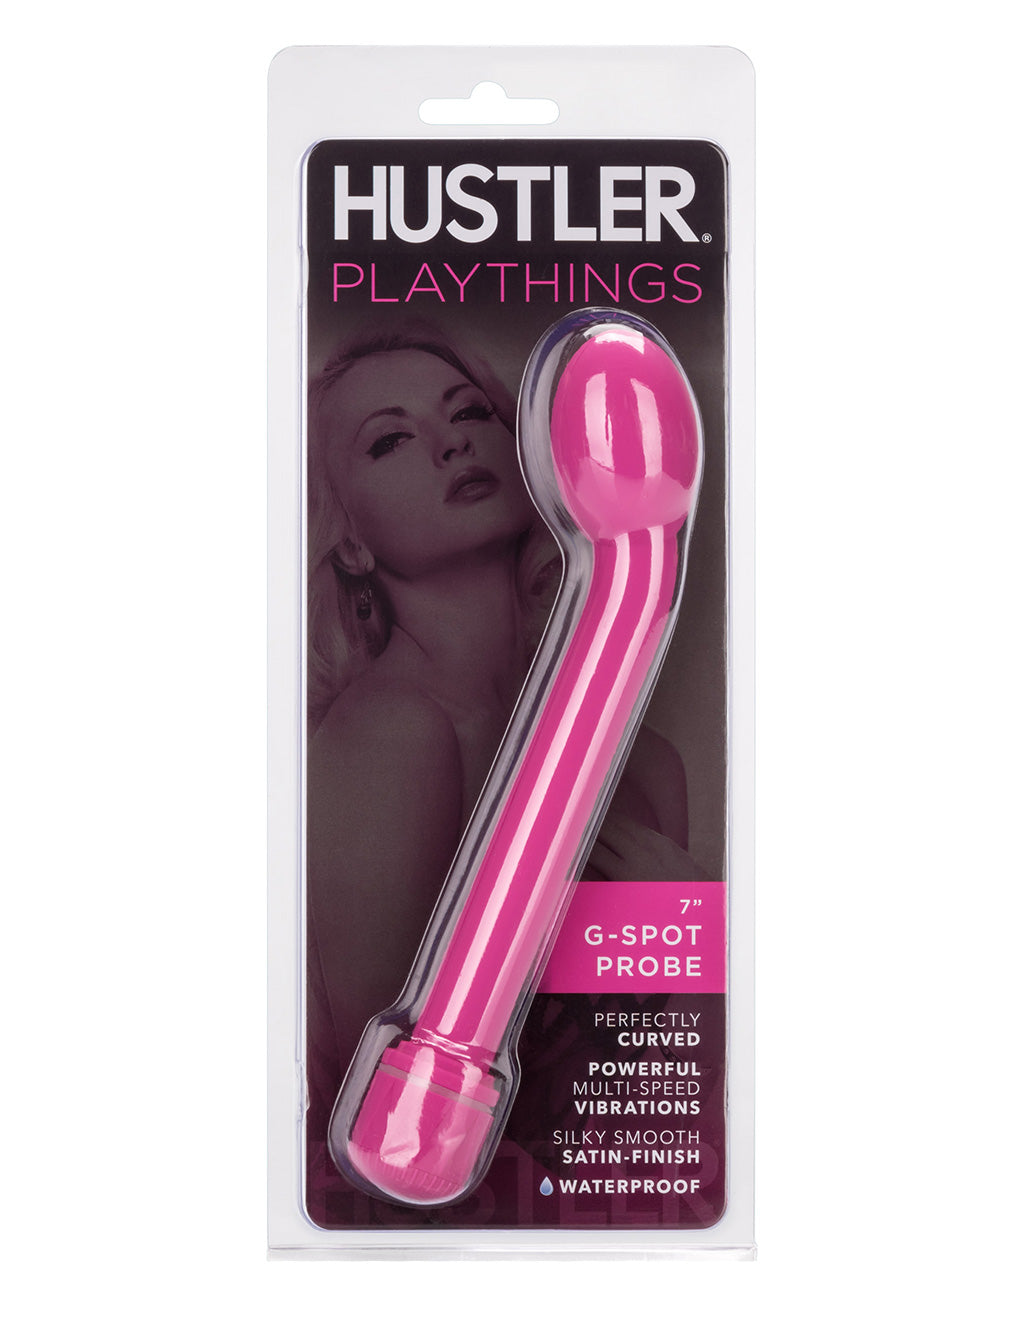 Hustler Playthings G-Spot Probe Vibrator - Novelties - in package